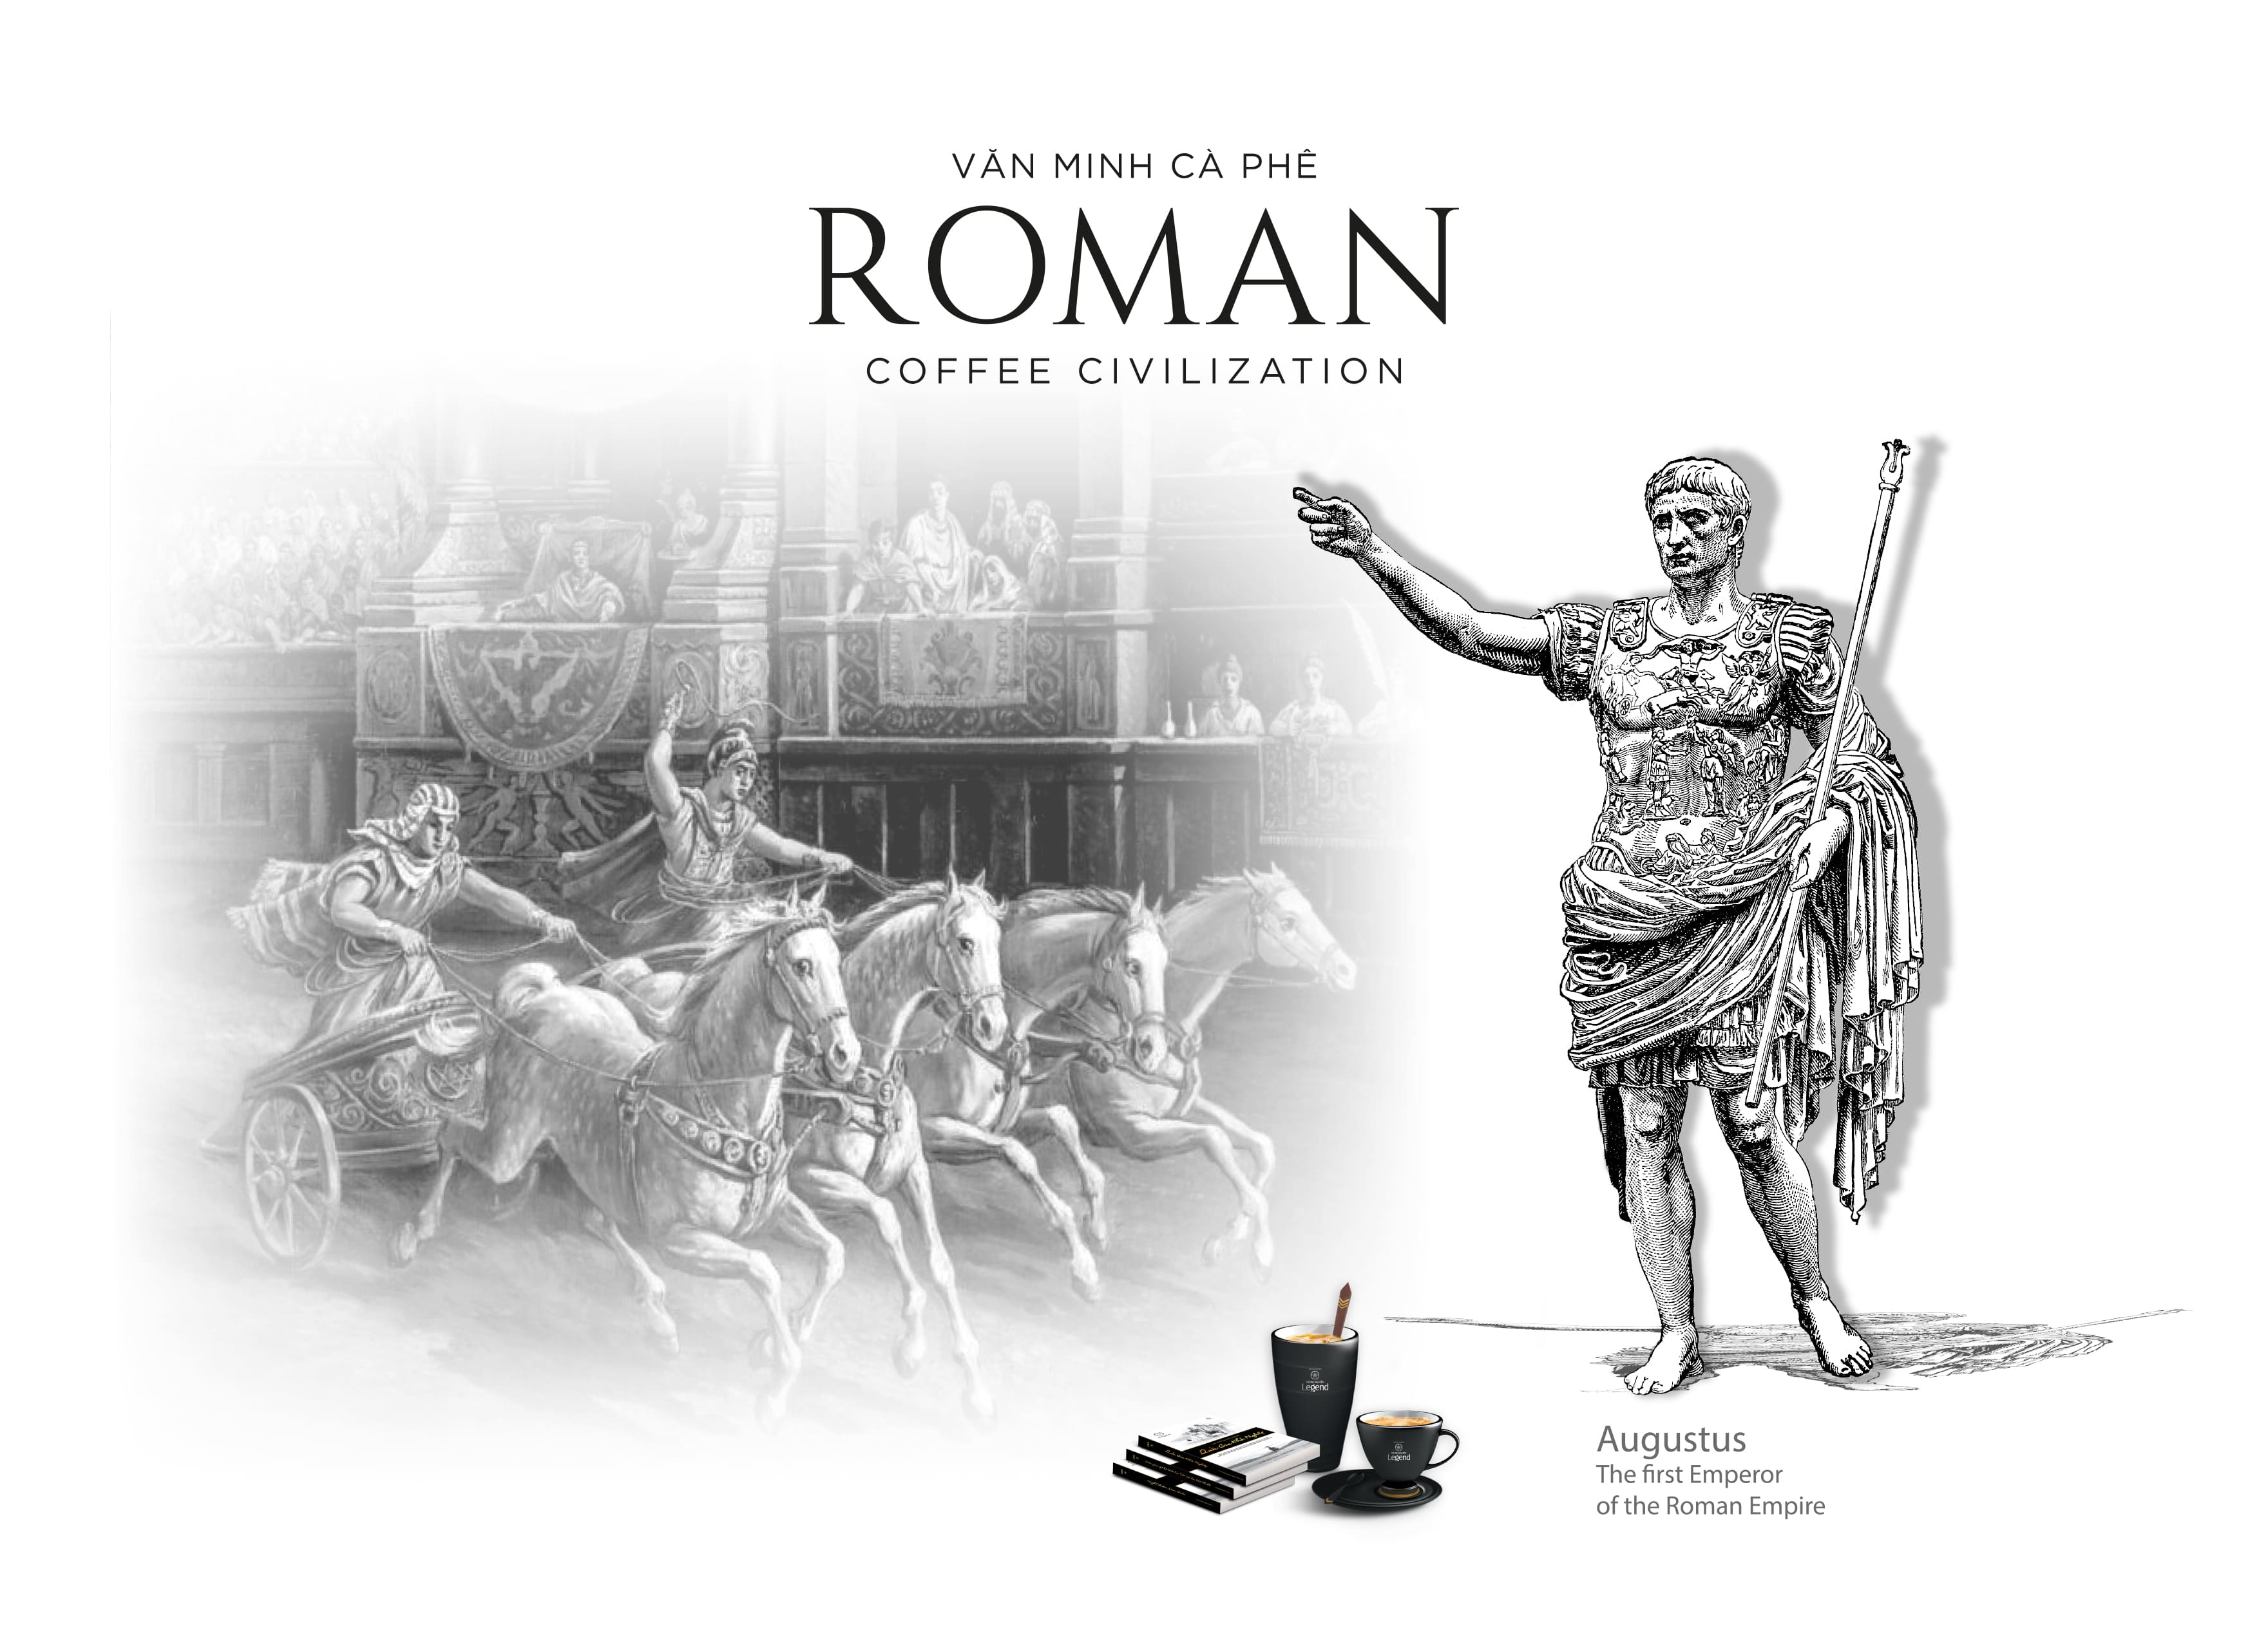 Roman Coffee Civilization